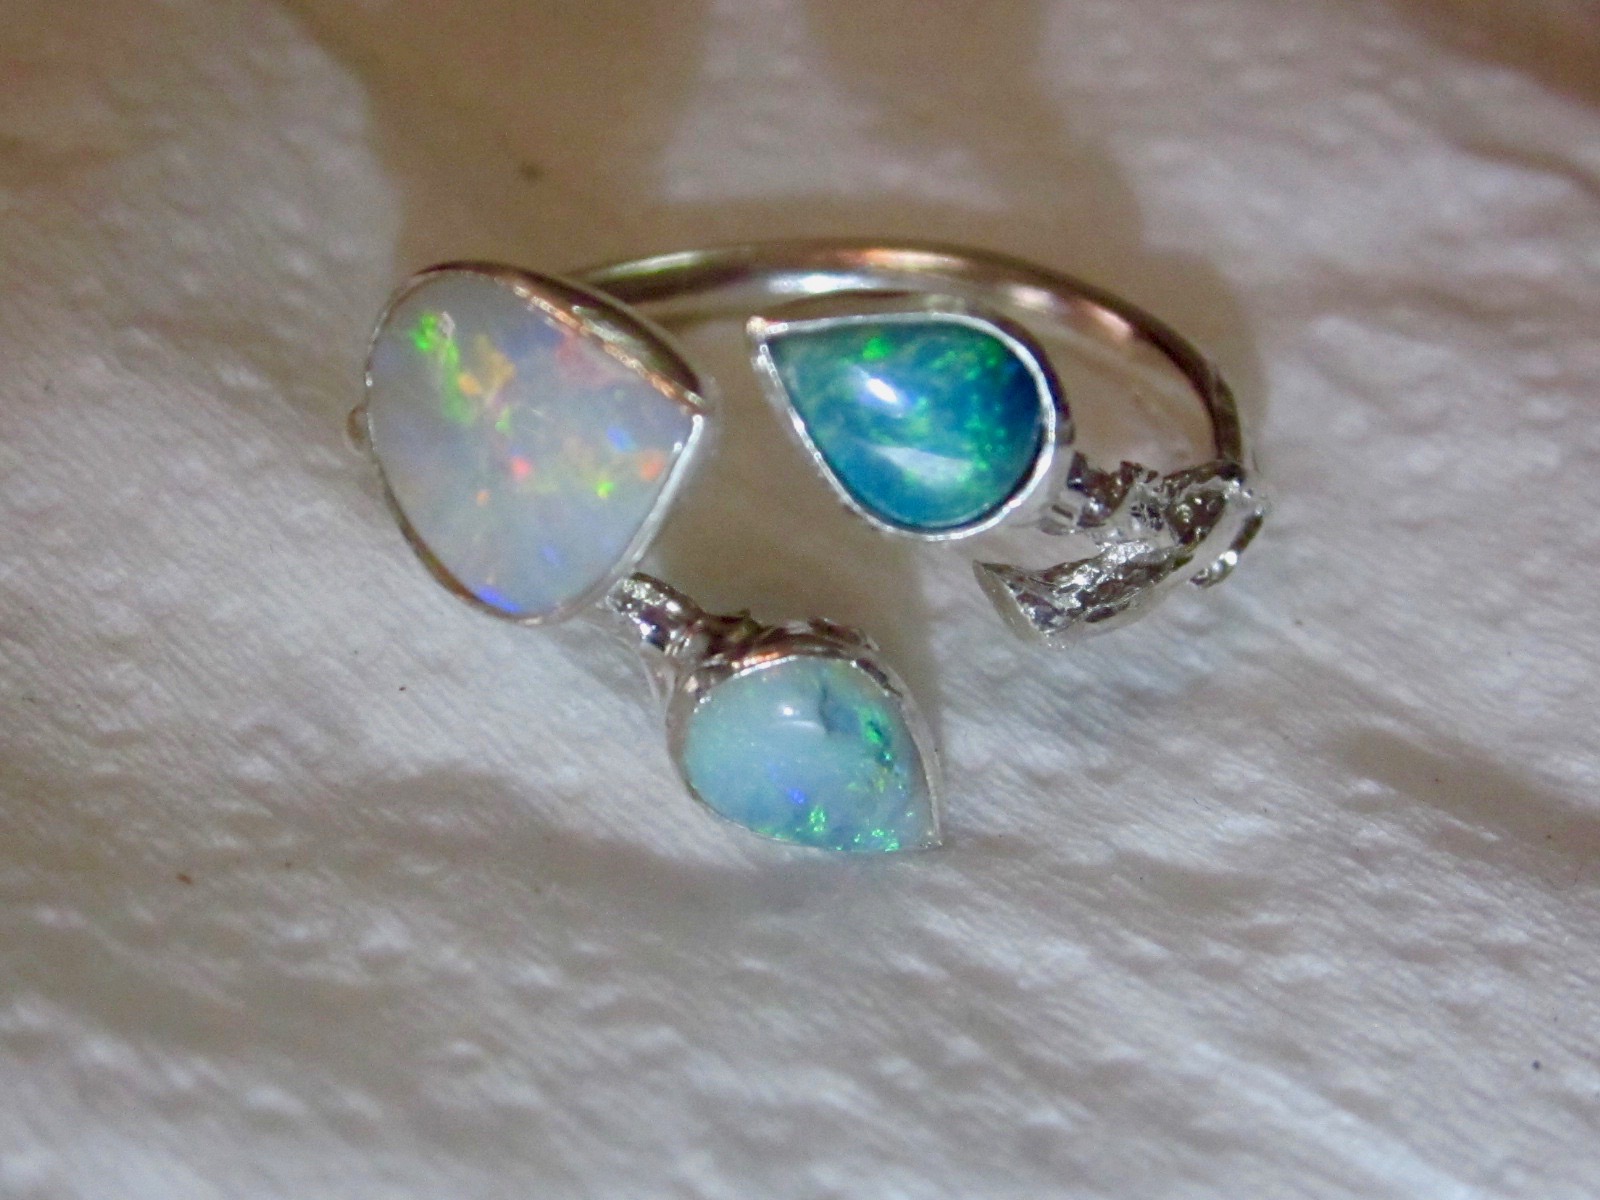 Opal rings jewellery guaranteed natural Australian gemstones 100%.